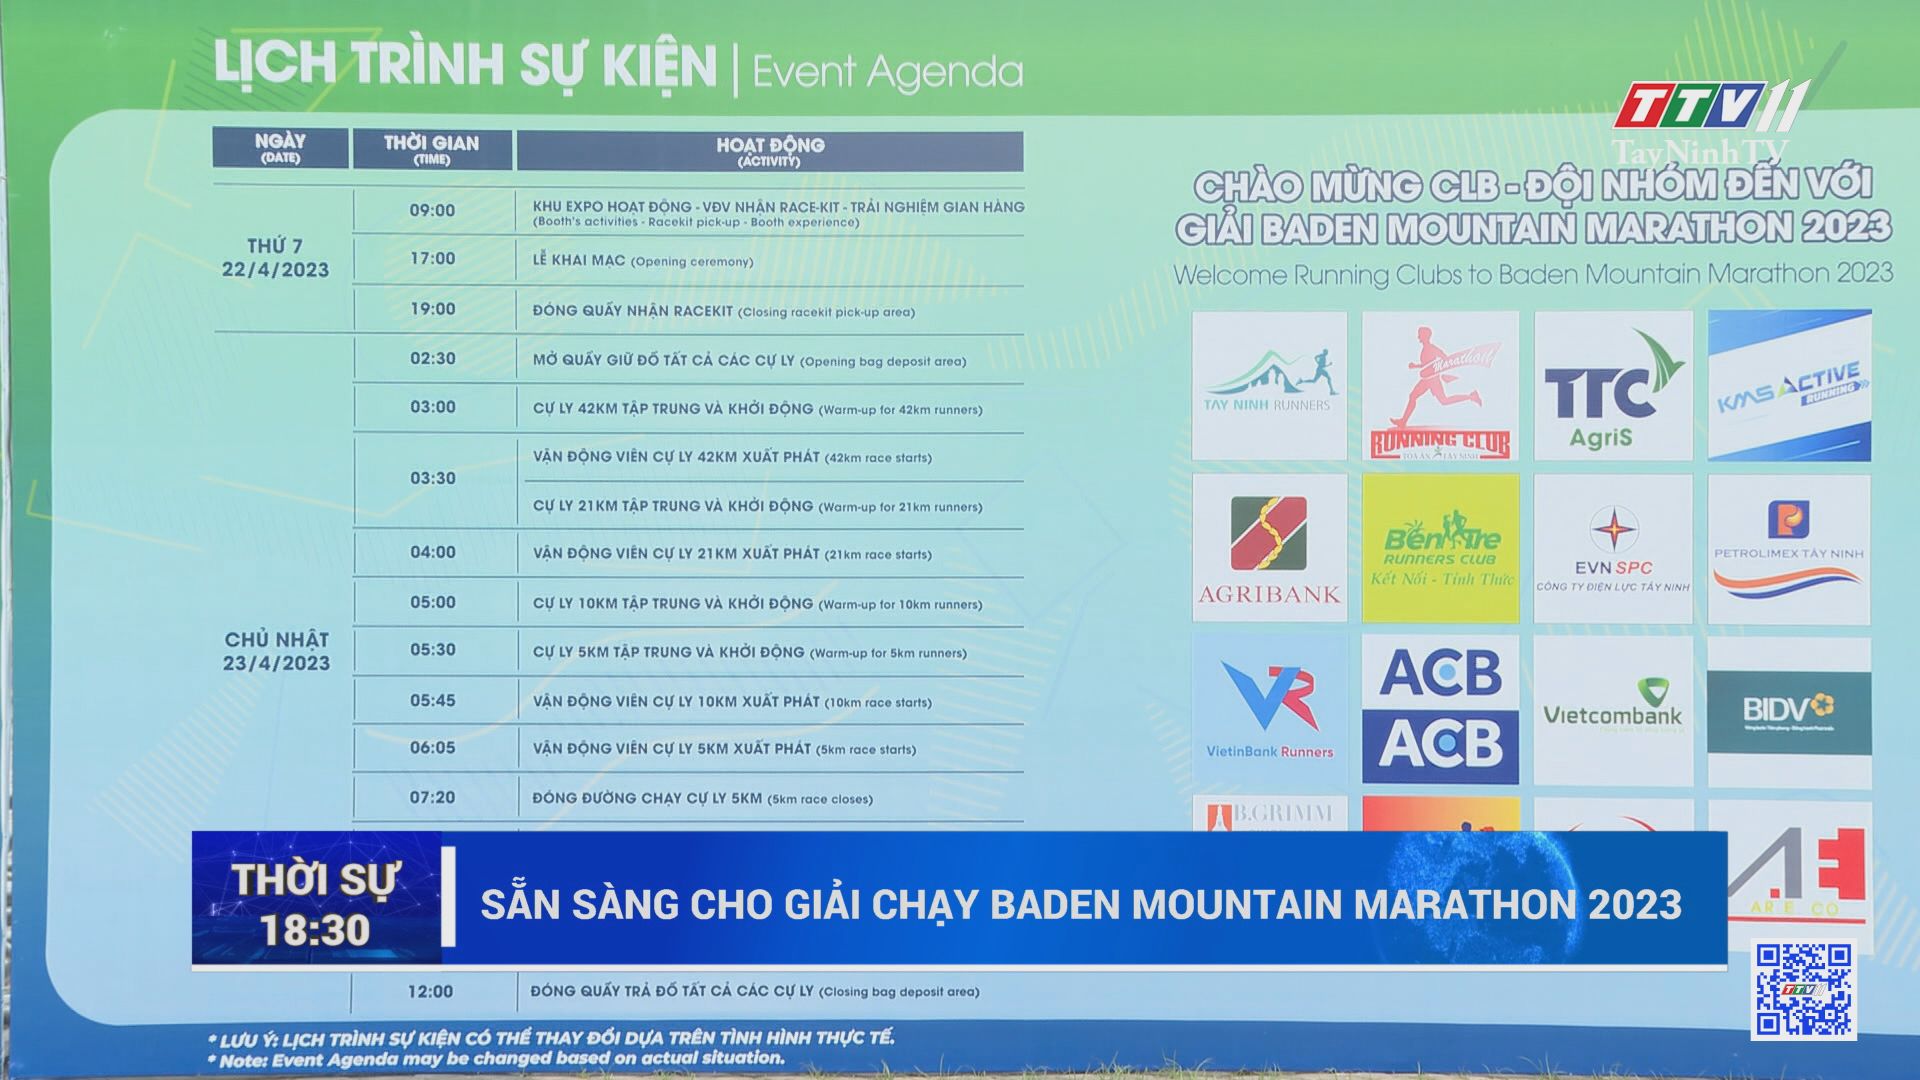 Sẵn sàng cho Giải chạy BaDen Mountain Marathon 2023 | TayNinhTV